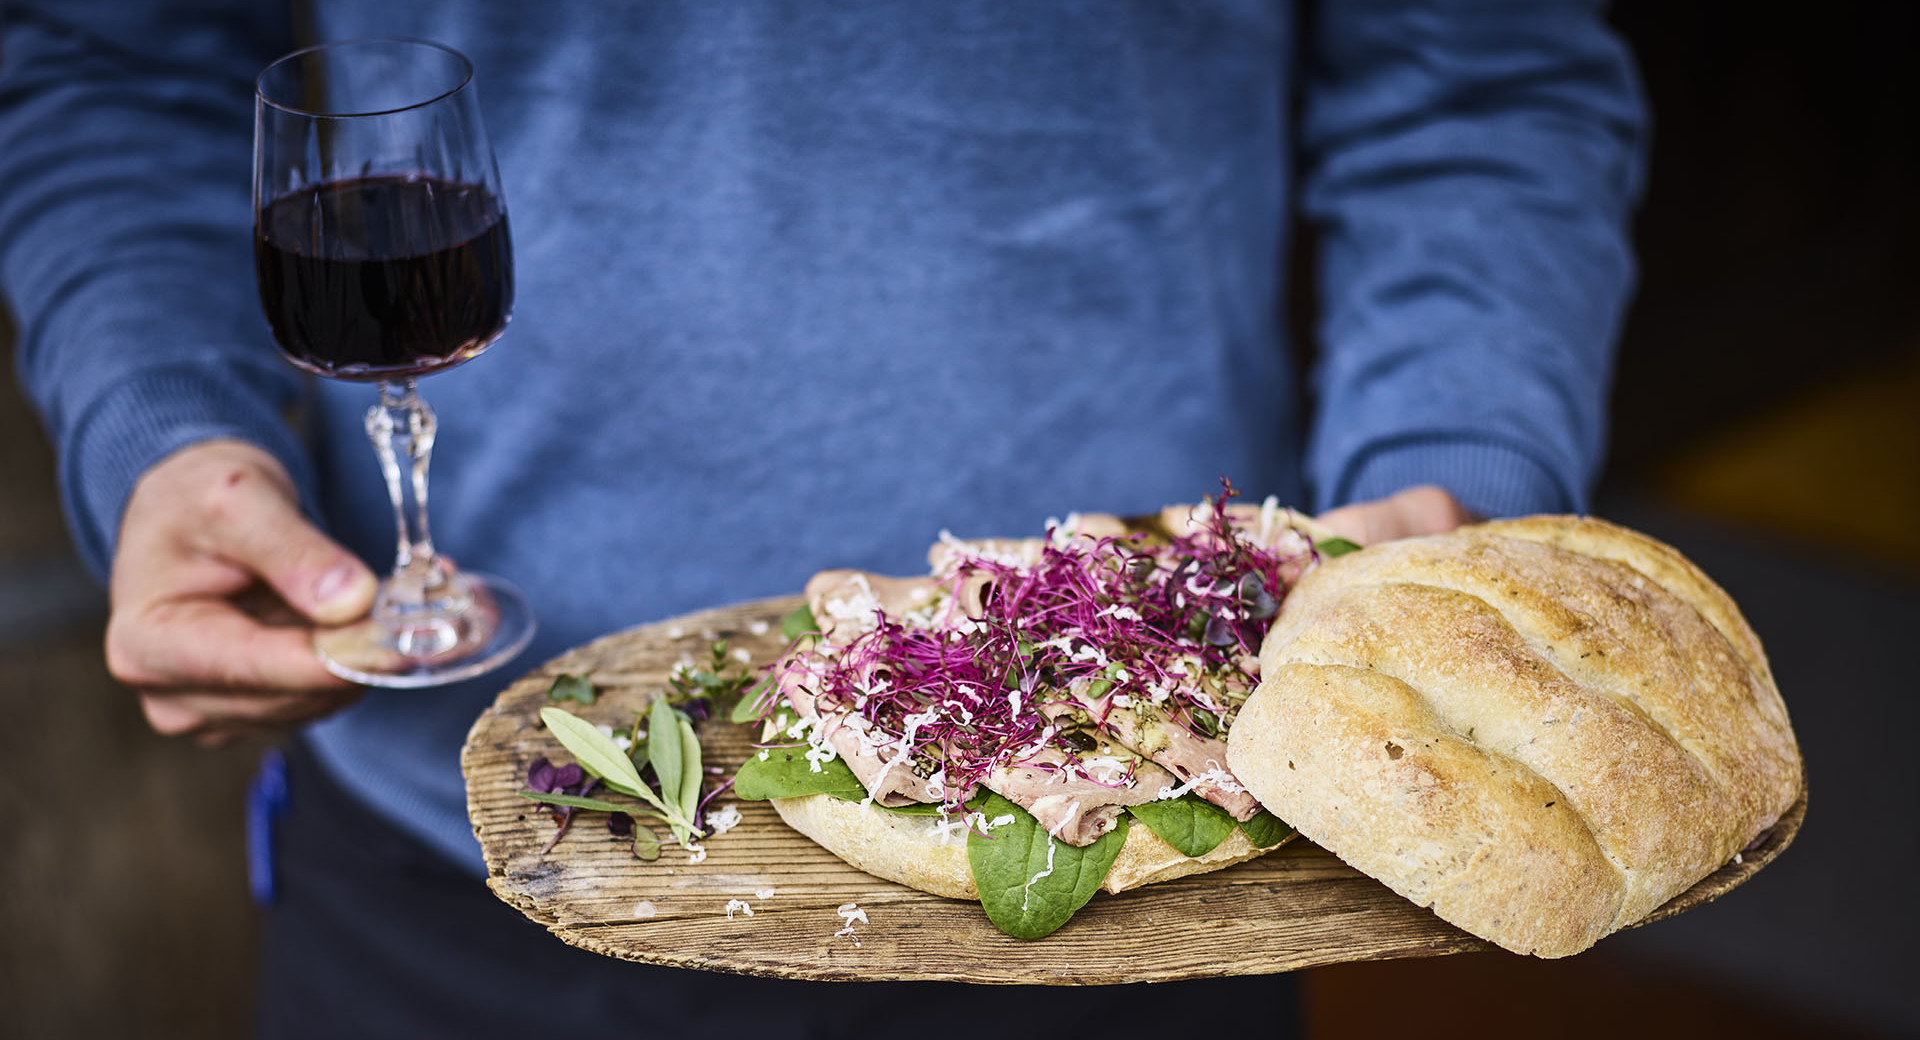 Goveji jezik, kruh na deski. Na levi strani kozarec vina.